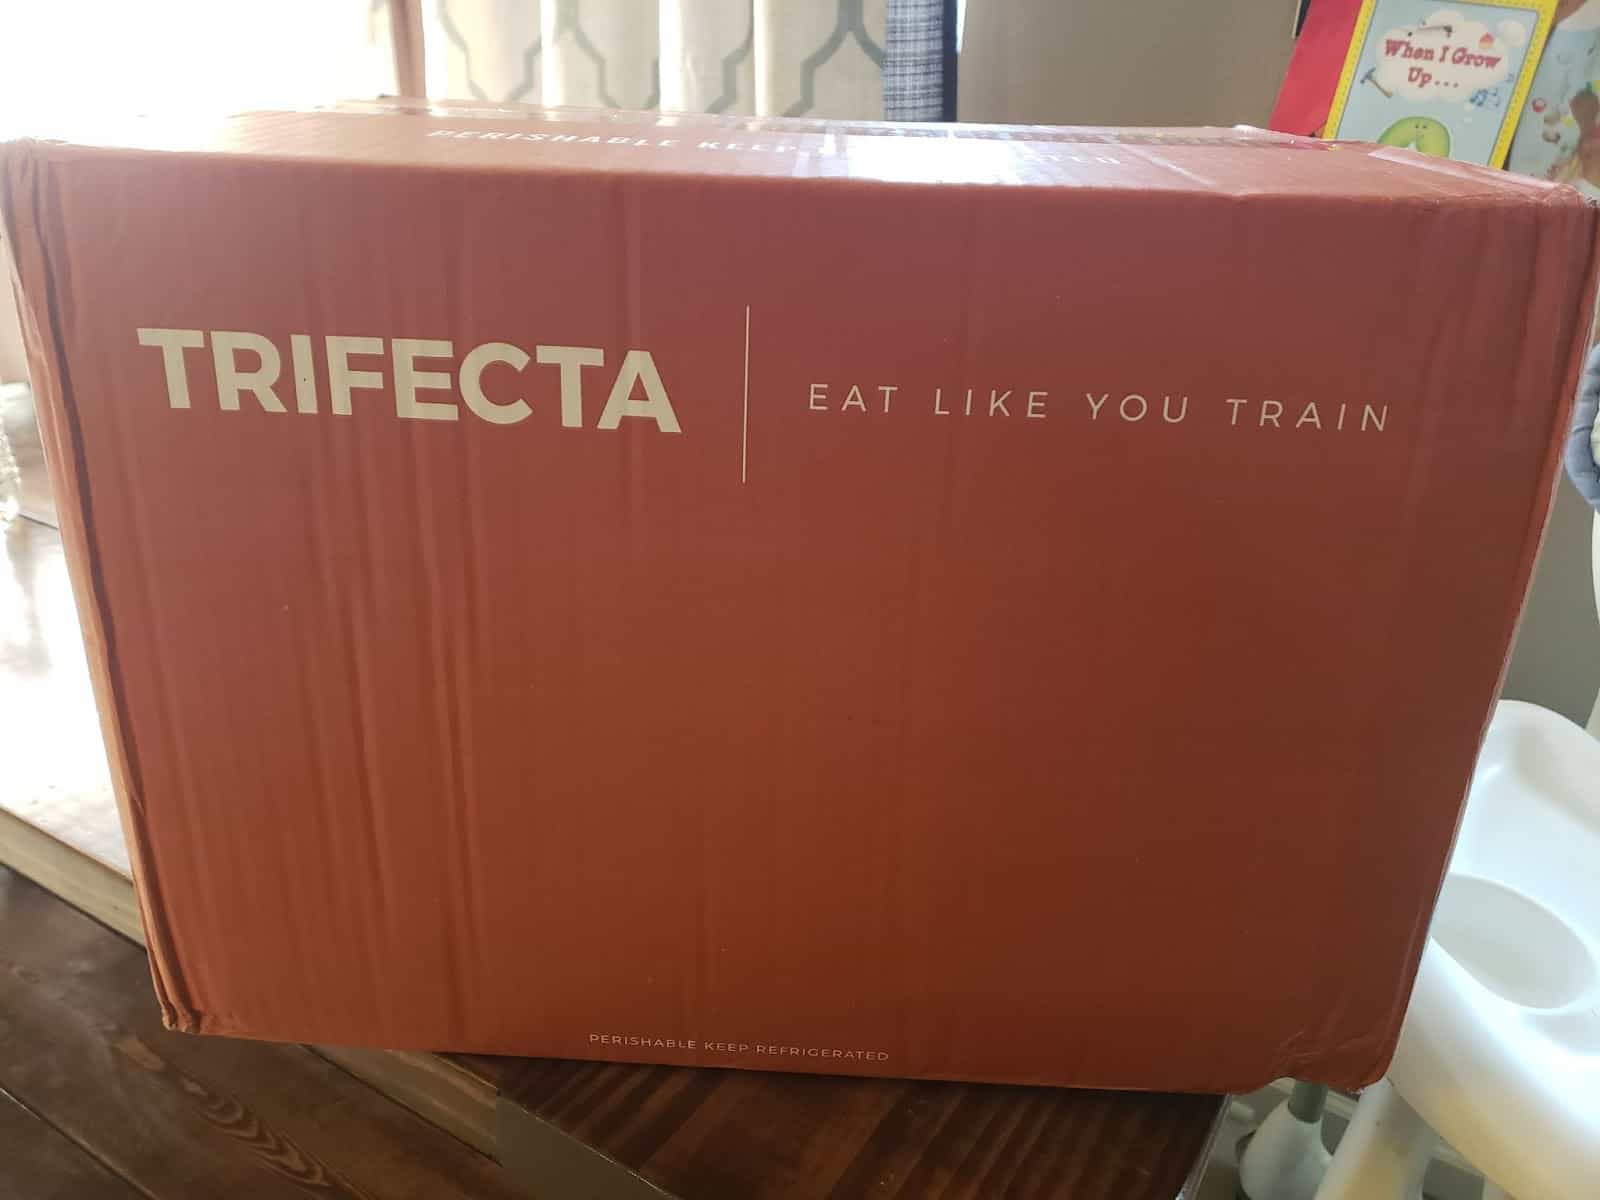 Trifecta box